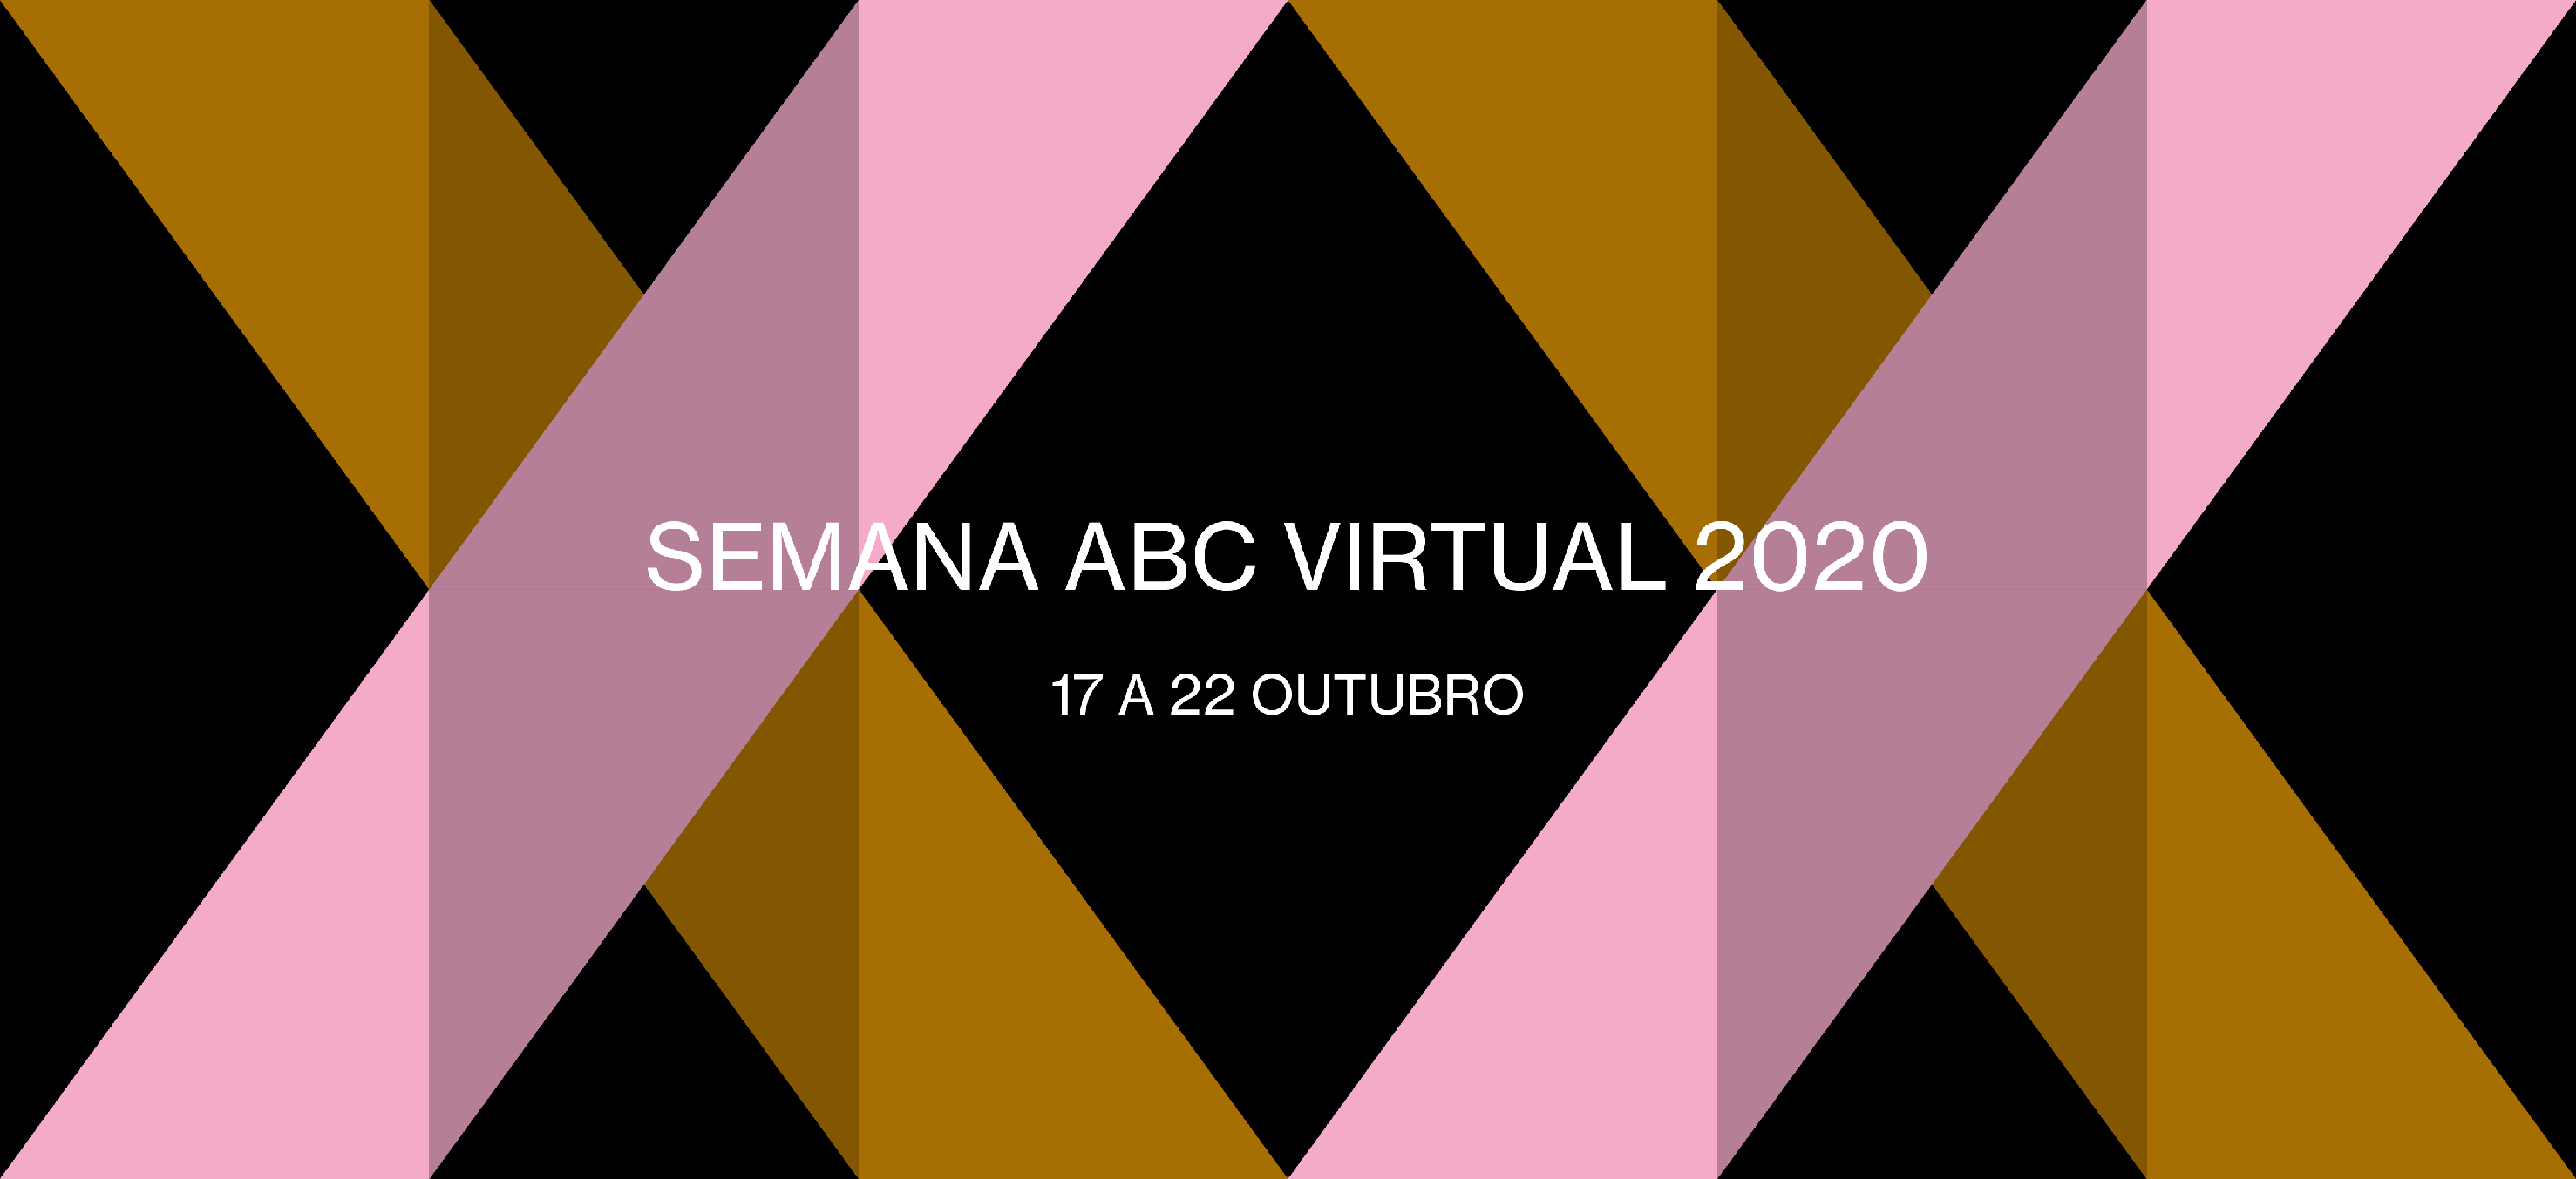 Programação Semana ABC virtual 2020: Repercussão da Covid-19 na produção audiovisual